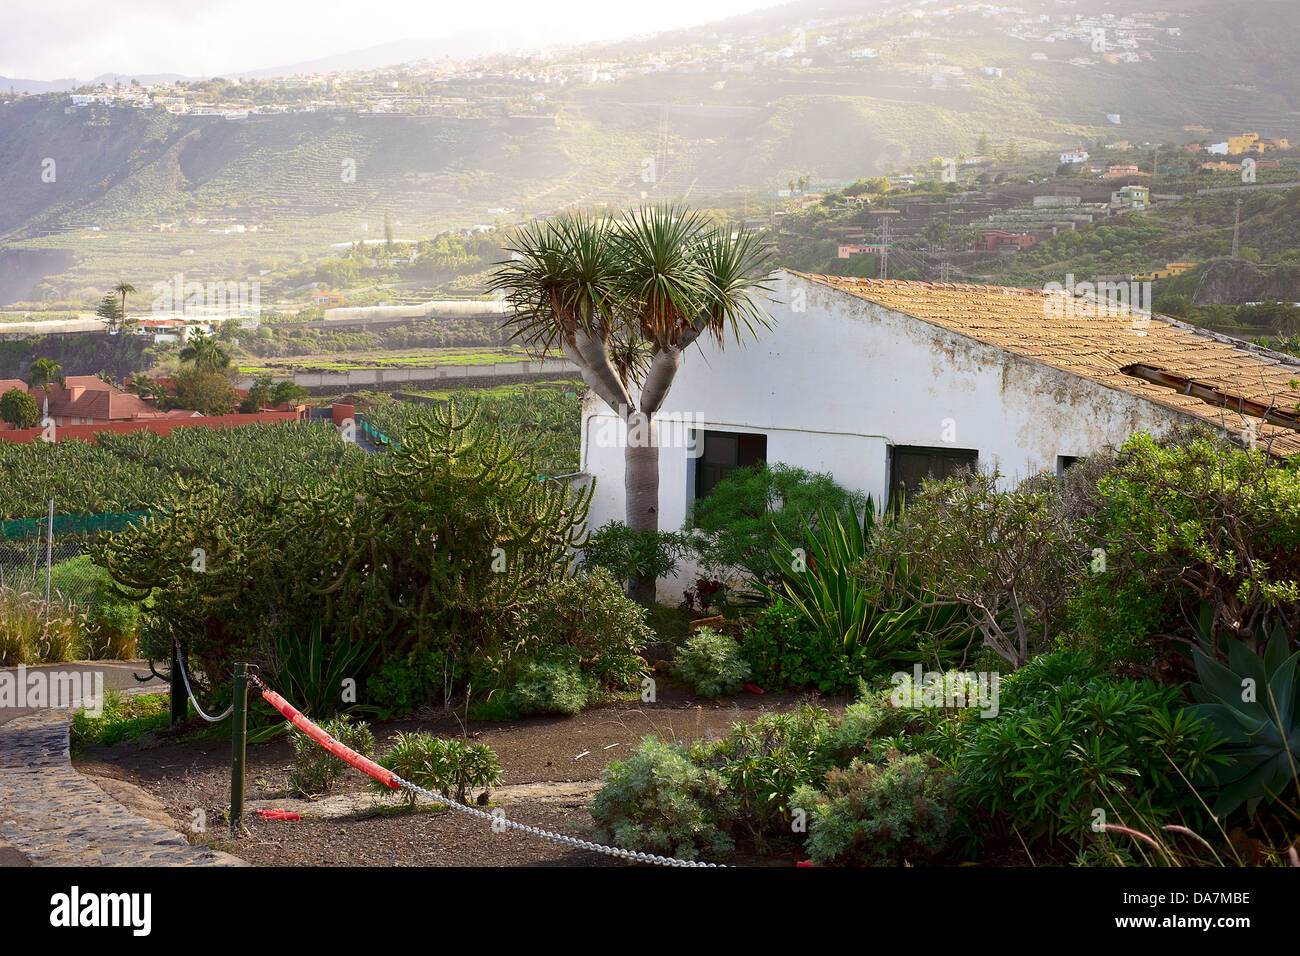 View of Puerto de la Cruz, Tenerife Stock Photo